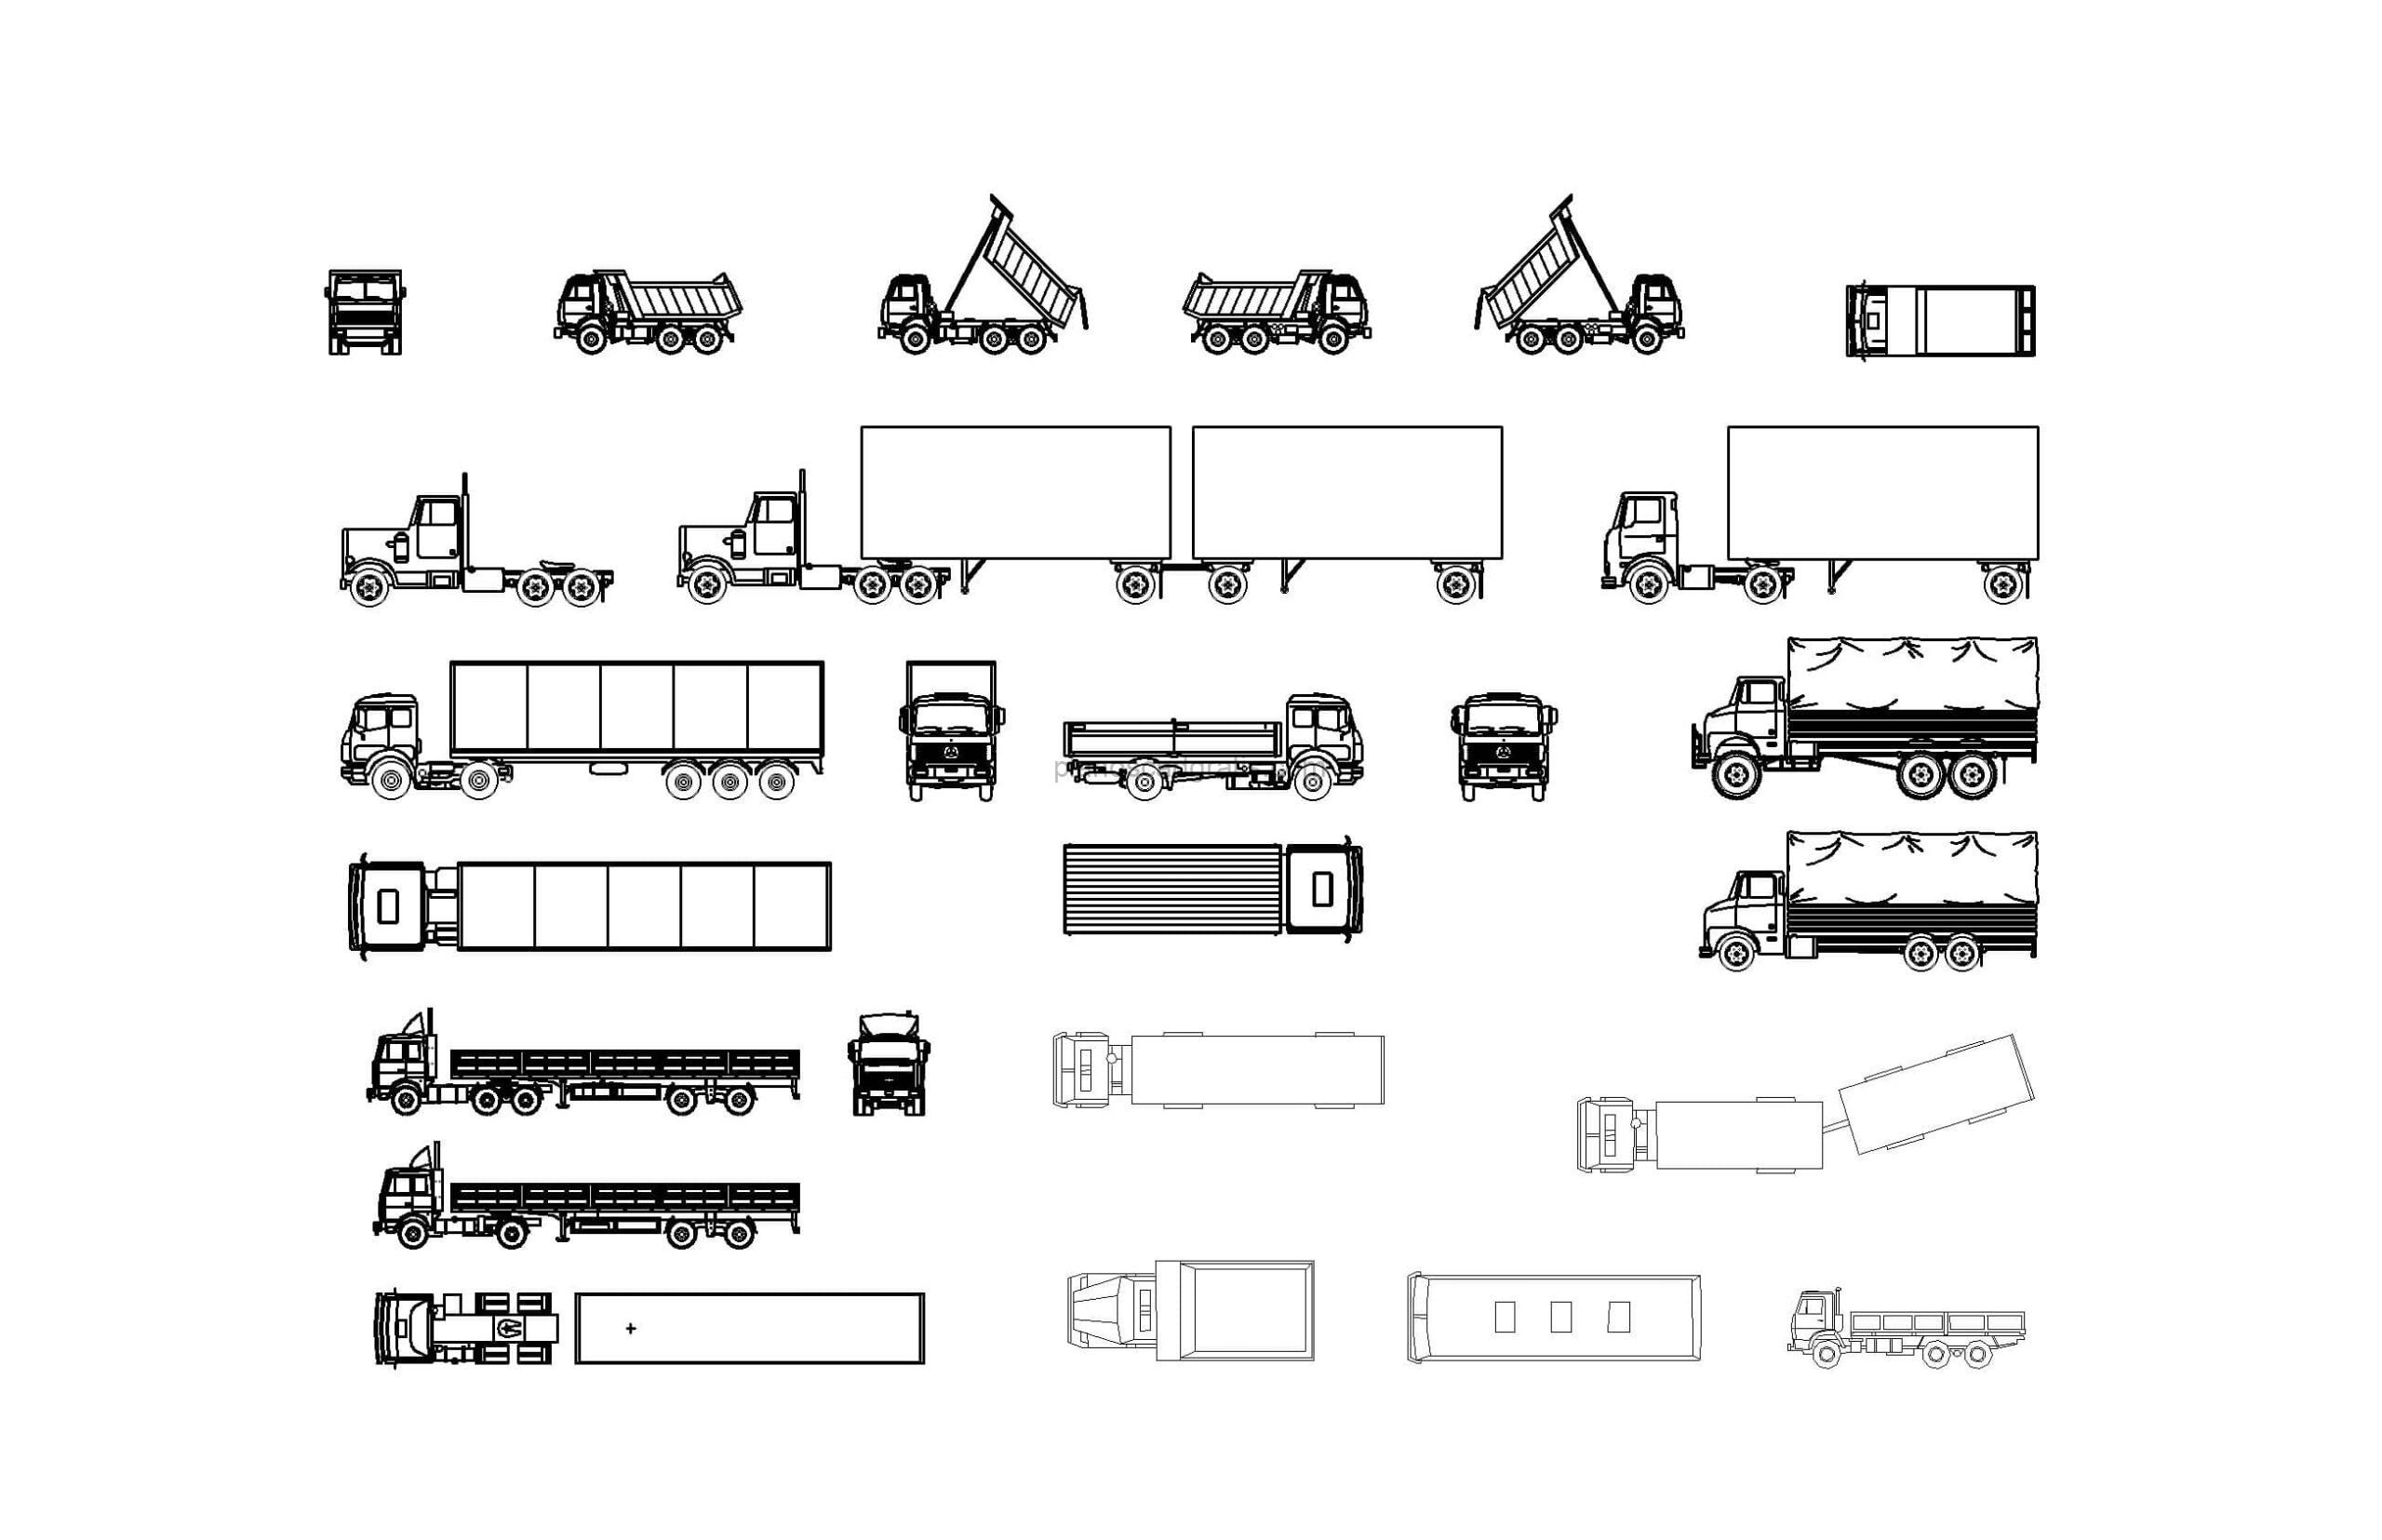 bloque de autocad de diferentes camiones, plano de autocad con vistas en planta y elevaciones, archivo dwg para descarga gratis